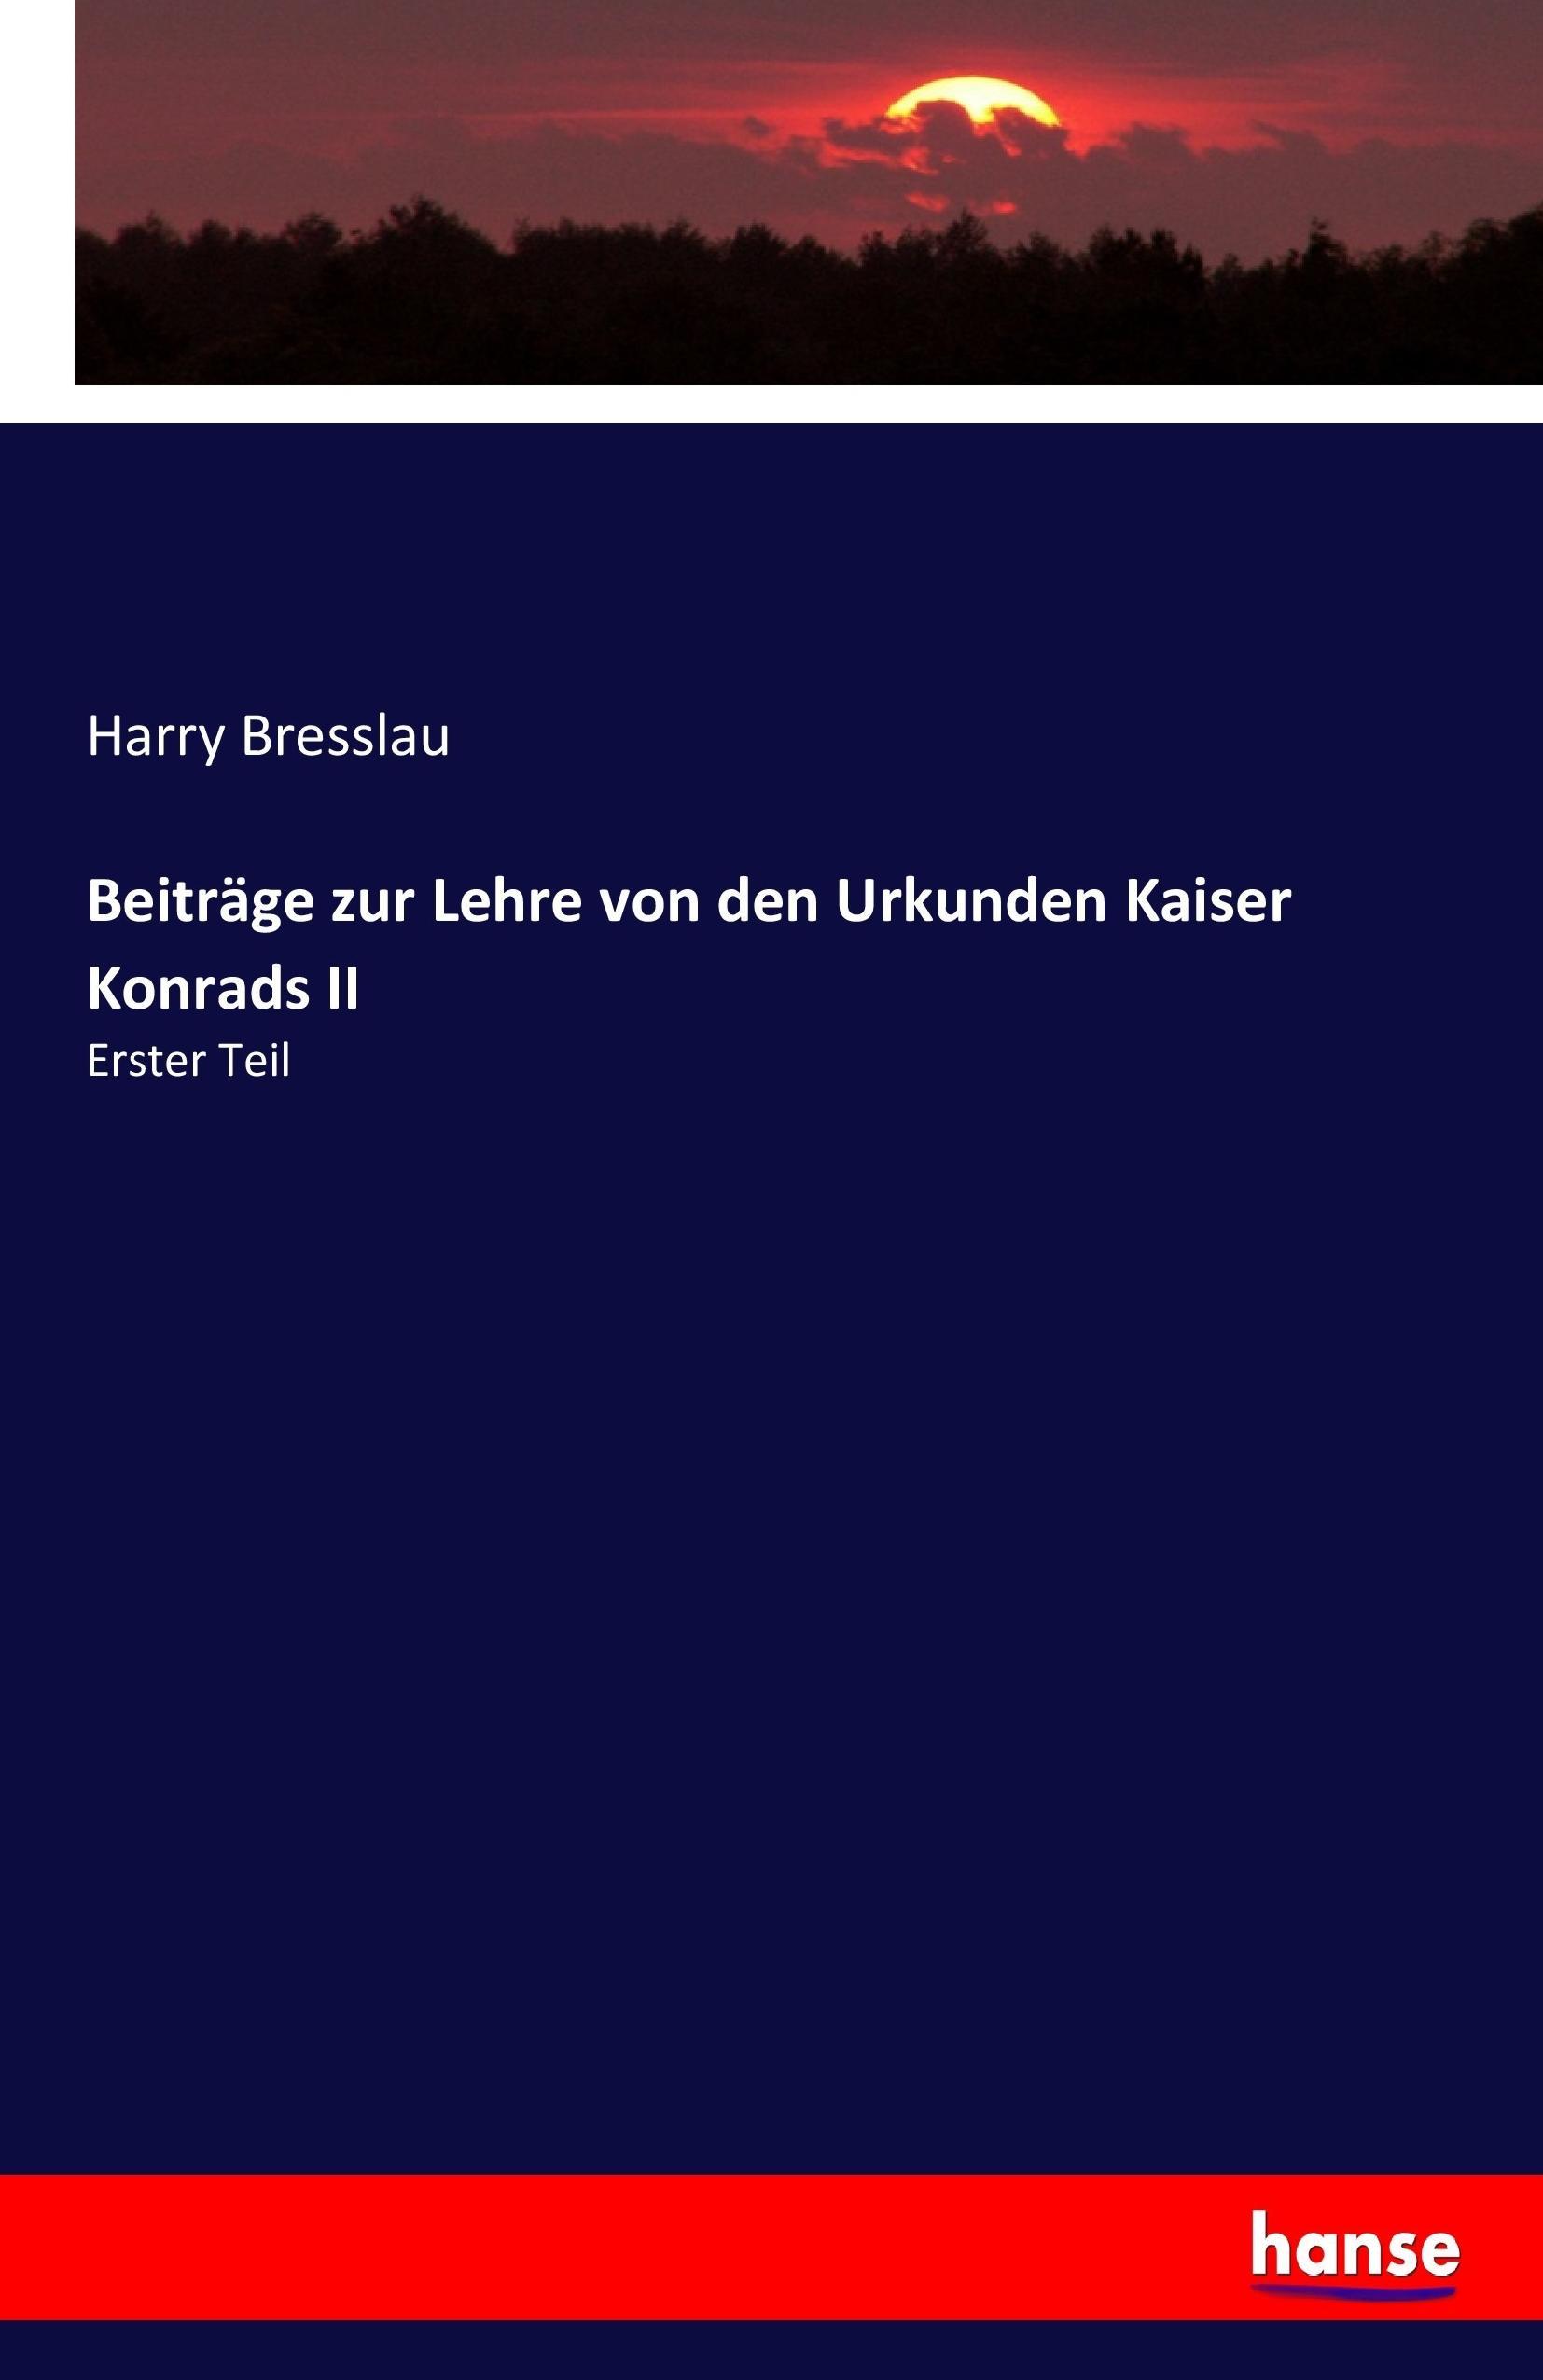 Beitraege zur Lehre von den Urkunden Kaiser Konrads II - Bresslau, Harry